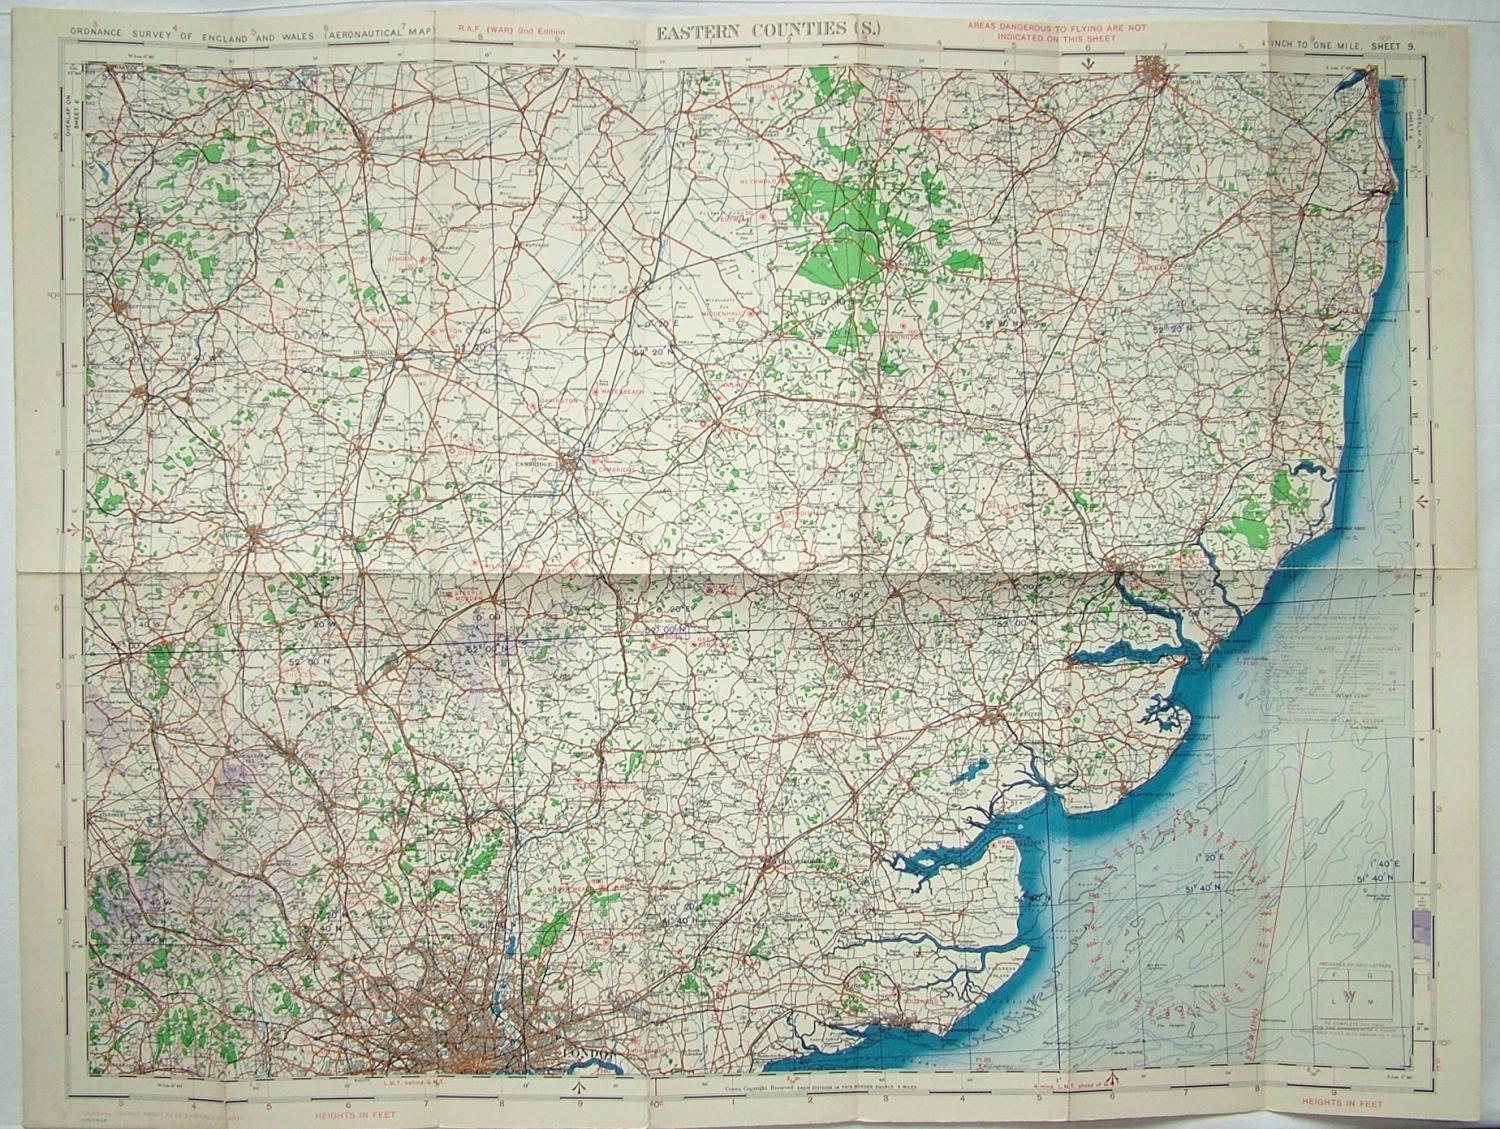 RAF Flight Map - Eastern Counties (S)